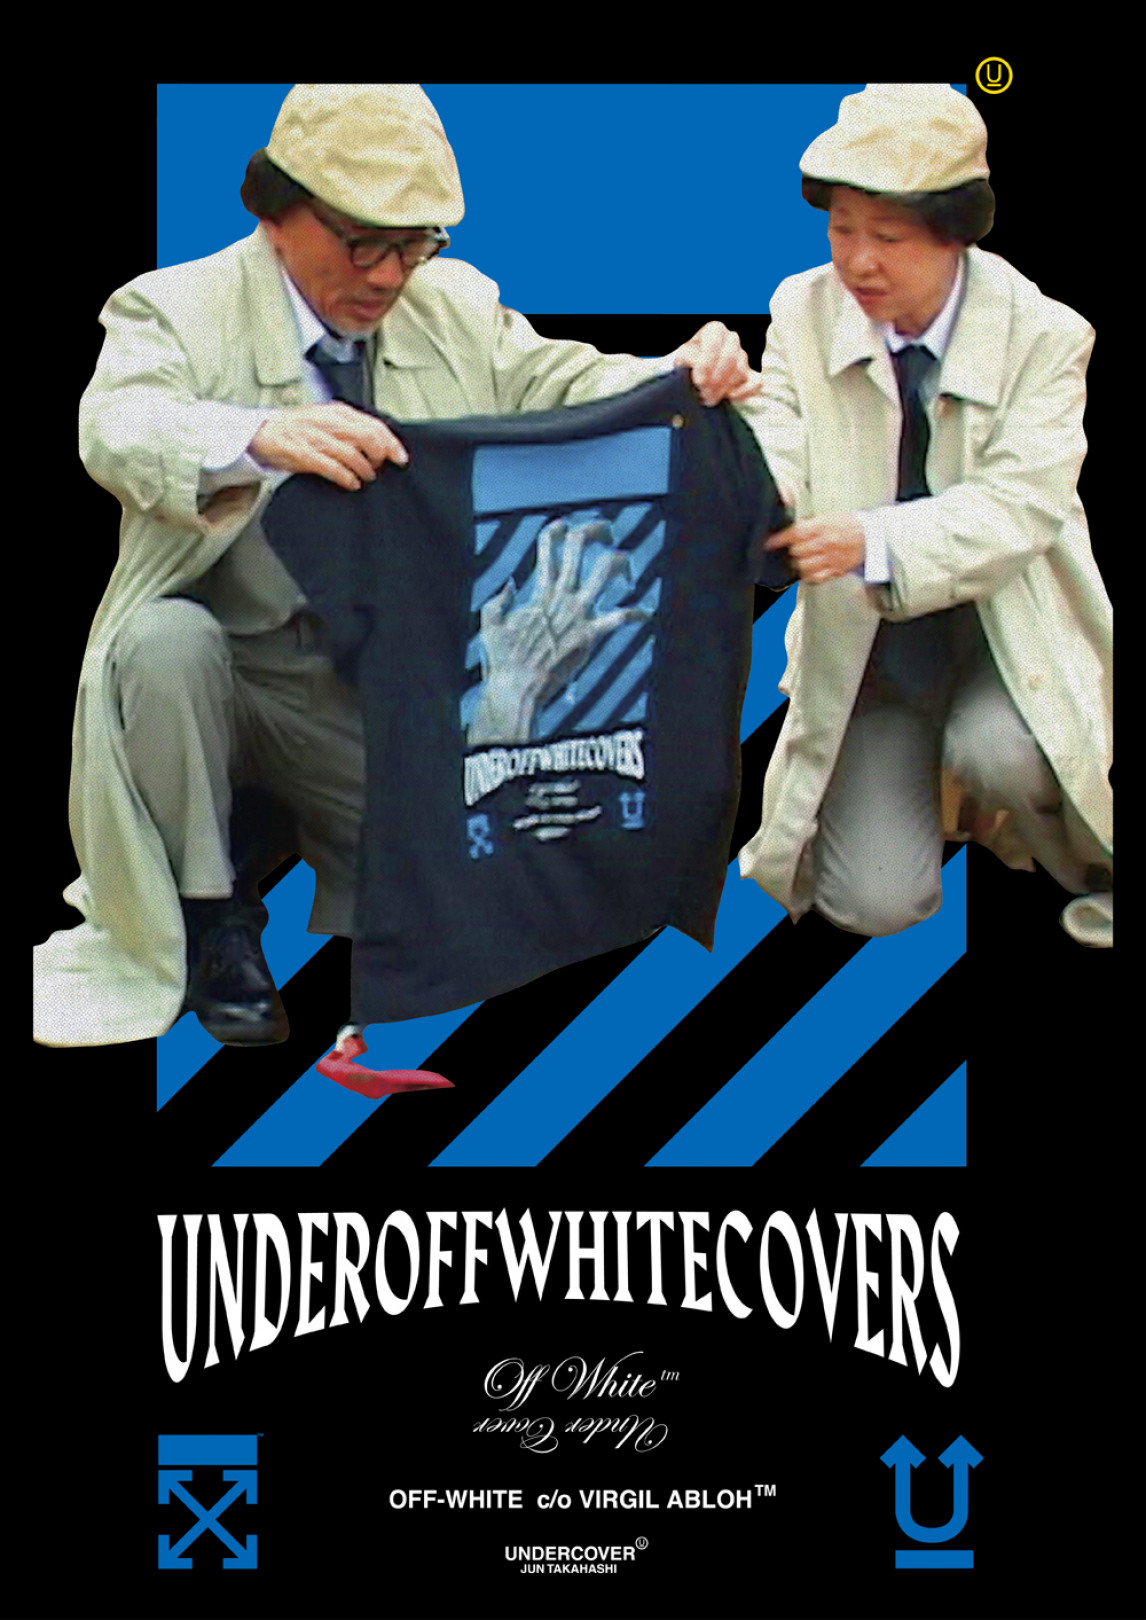 オフ ホワイト アンダーカバーが初コラボ Underoffwhitecovers のロゴ Fashion Fashion Headline